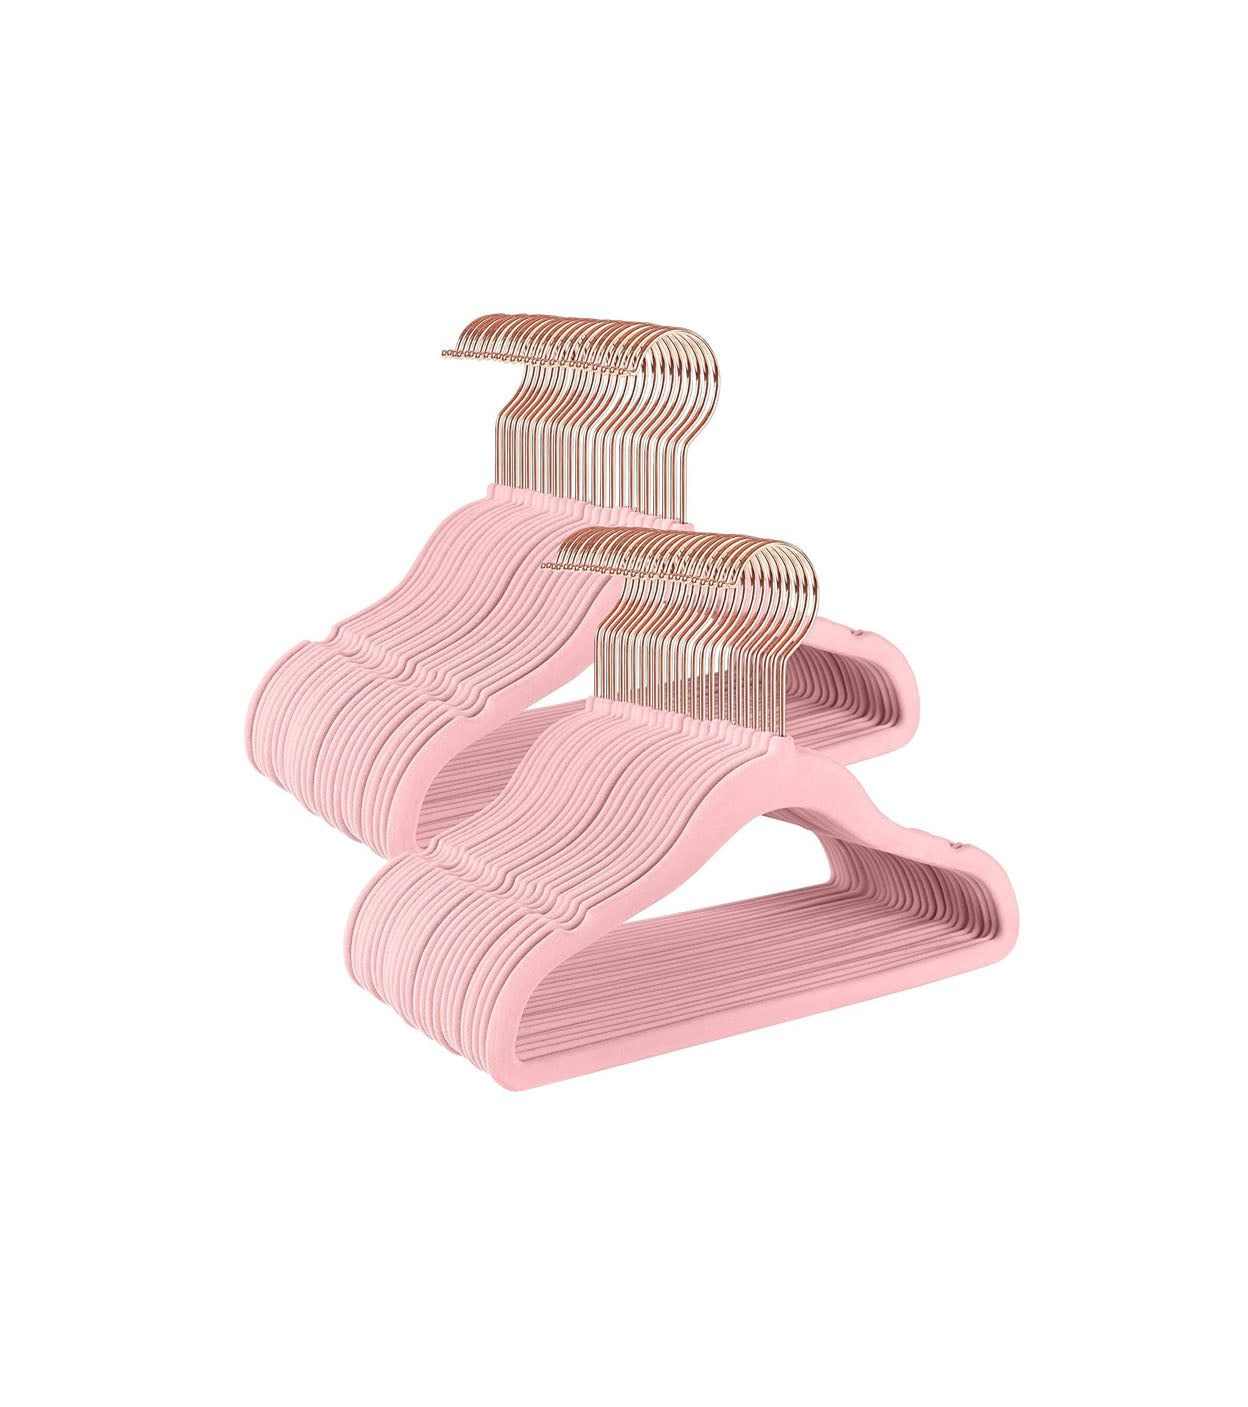 Ganchos de terciopelo antideslizantes para ropa de bebé, 29 cm, paquete de 50 perchas color rosa